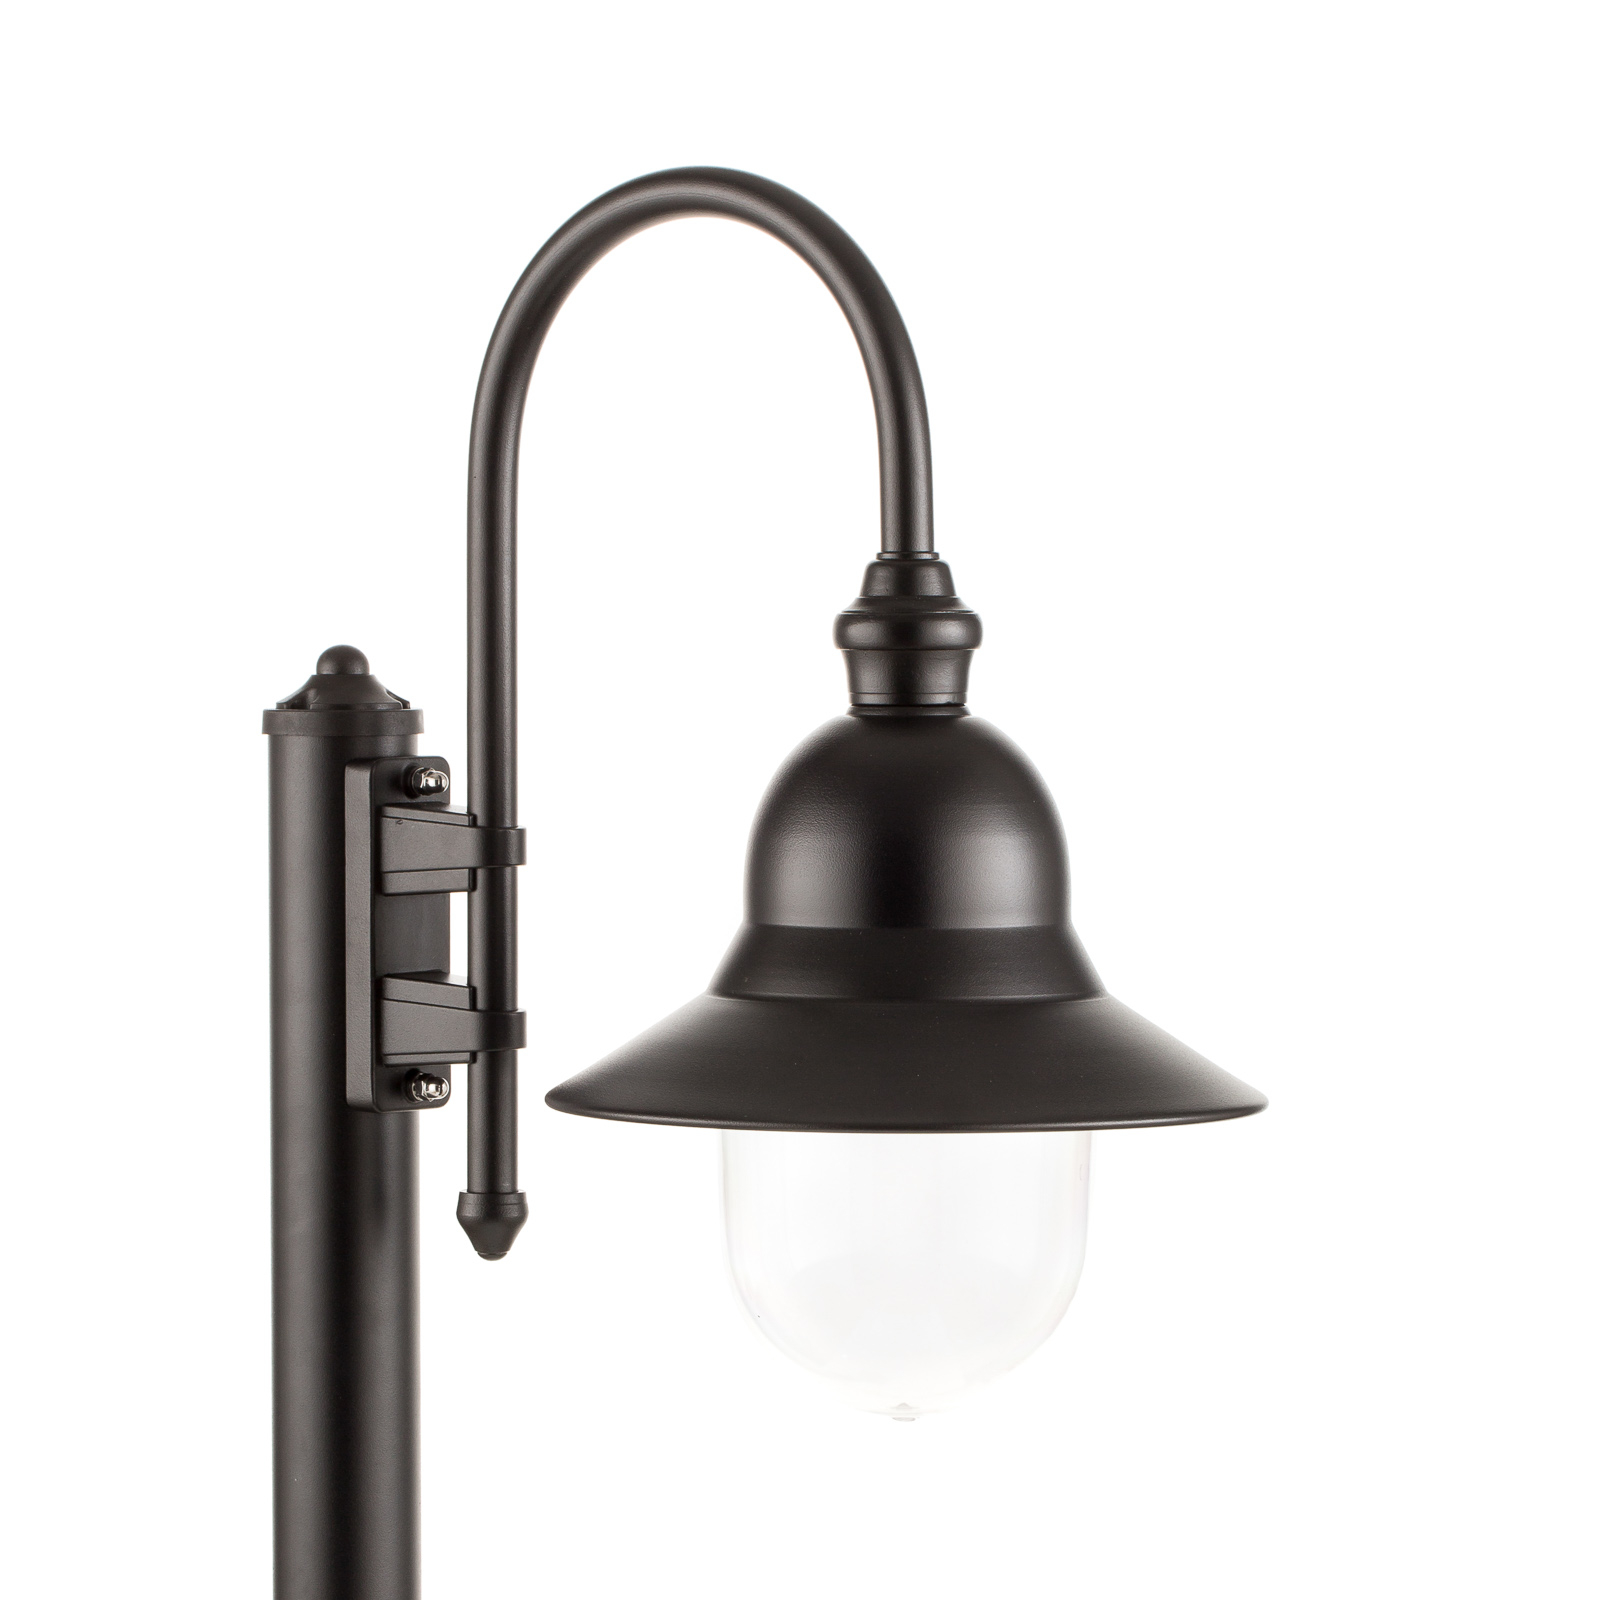 Útjelző lámpa Nios öntött alumíniumból, fekete színben